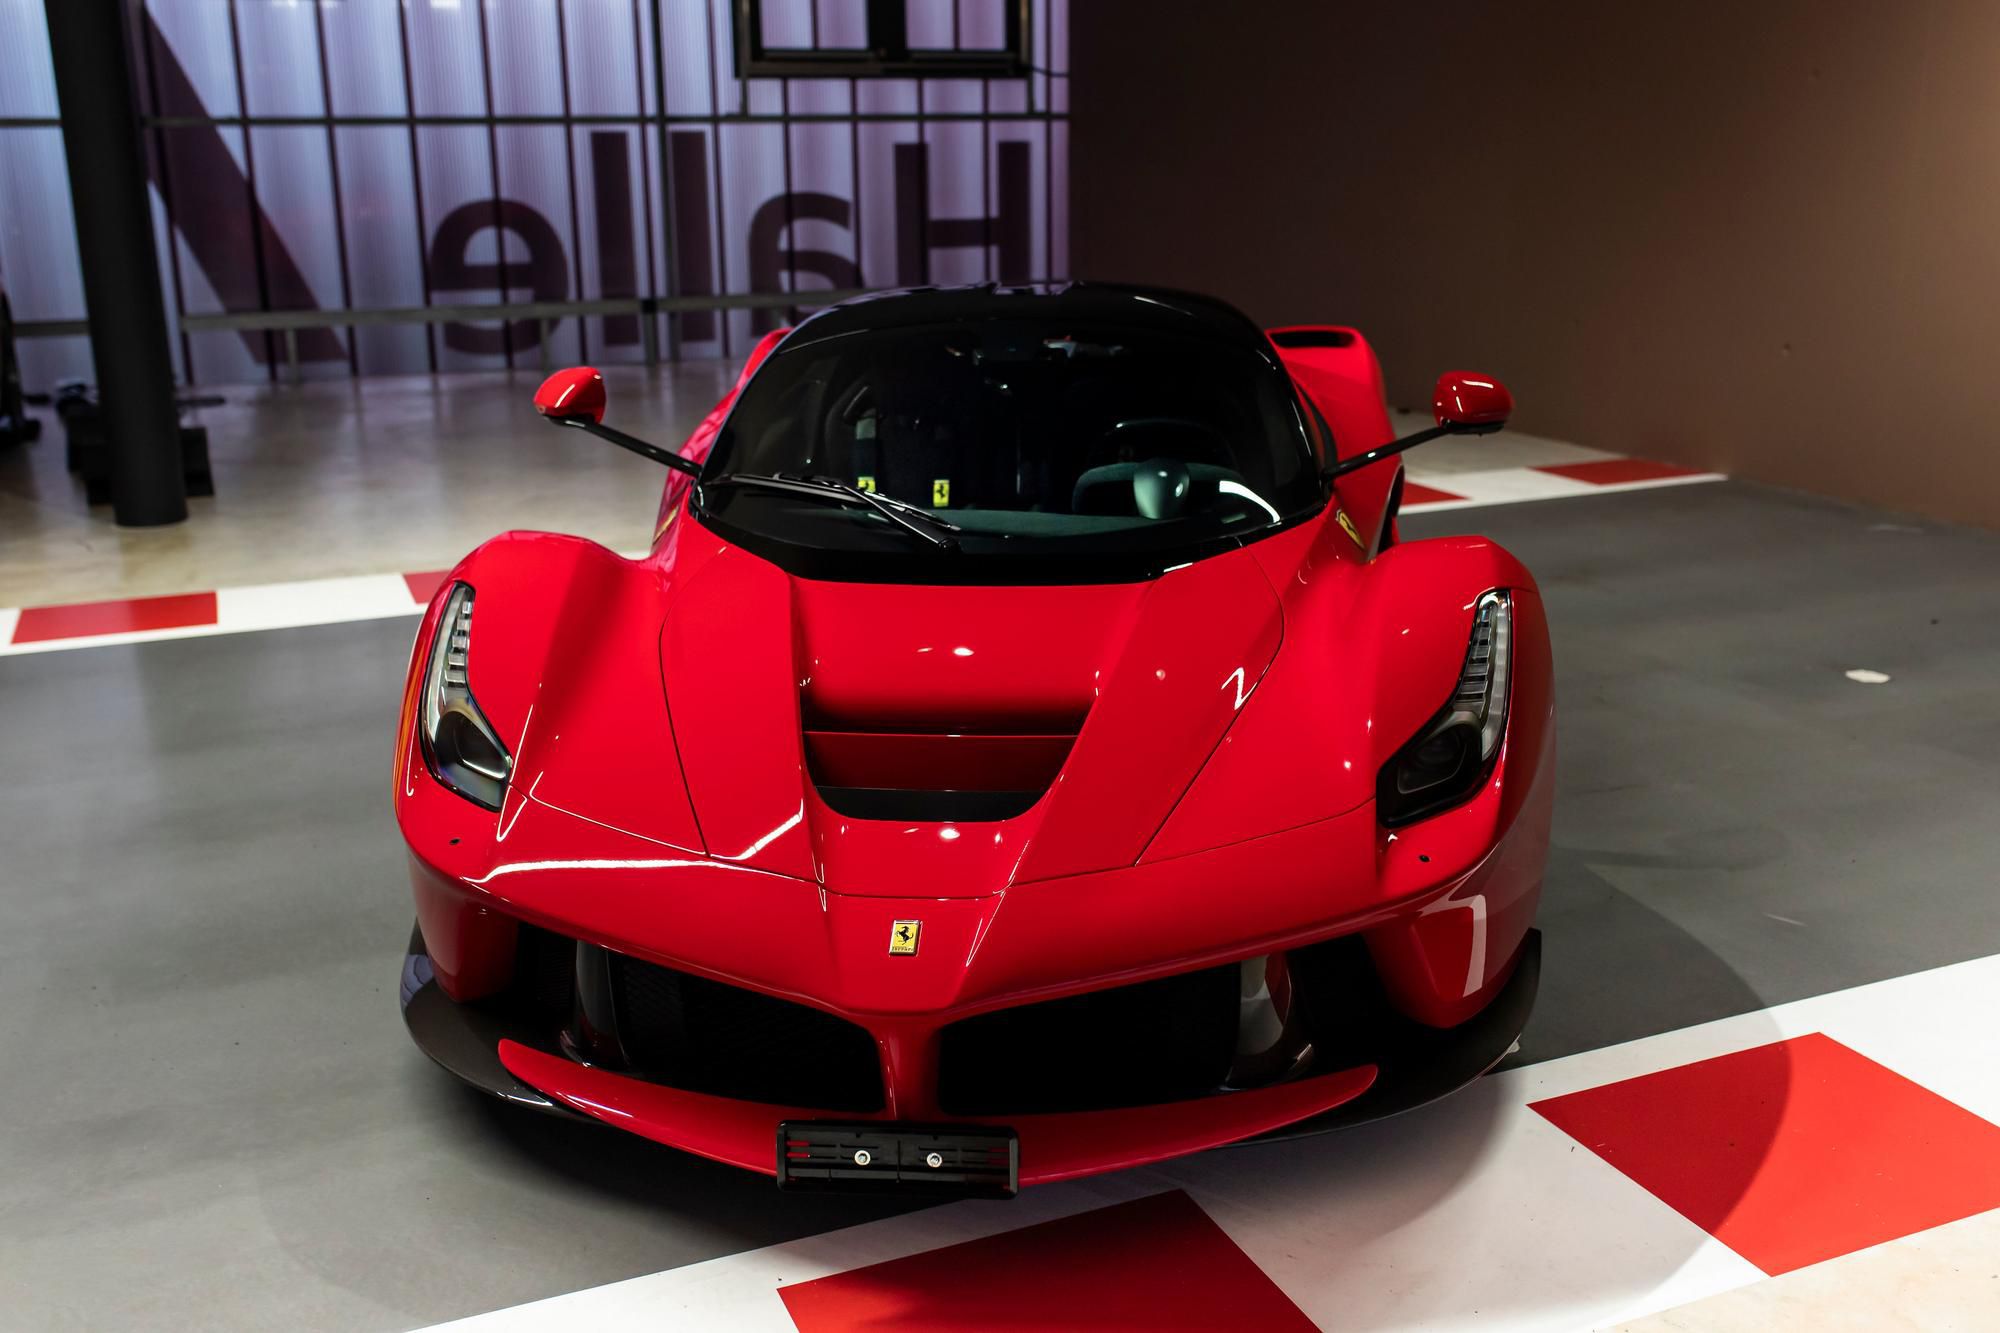 Toto Ferrari, z ktorého bolo vyrobených len 500 kusov, si Sebastian Vettel obstaral ako nové. Je vybavené systémom KERS, elektromotorom a okrem toho aj 6,3-litrovým motorom V12. Logo Vettel sa nachádza na sedadlách a rovnako aj na volante, avšak Nemec s týmto autom odjazdil len 490 kilometrov.